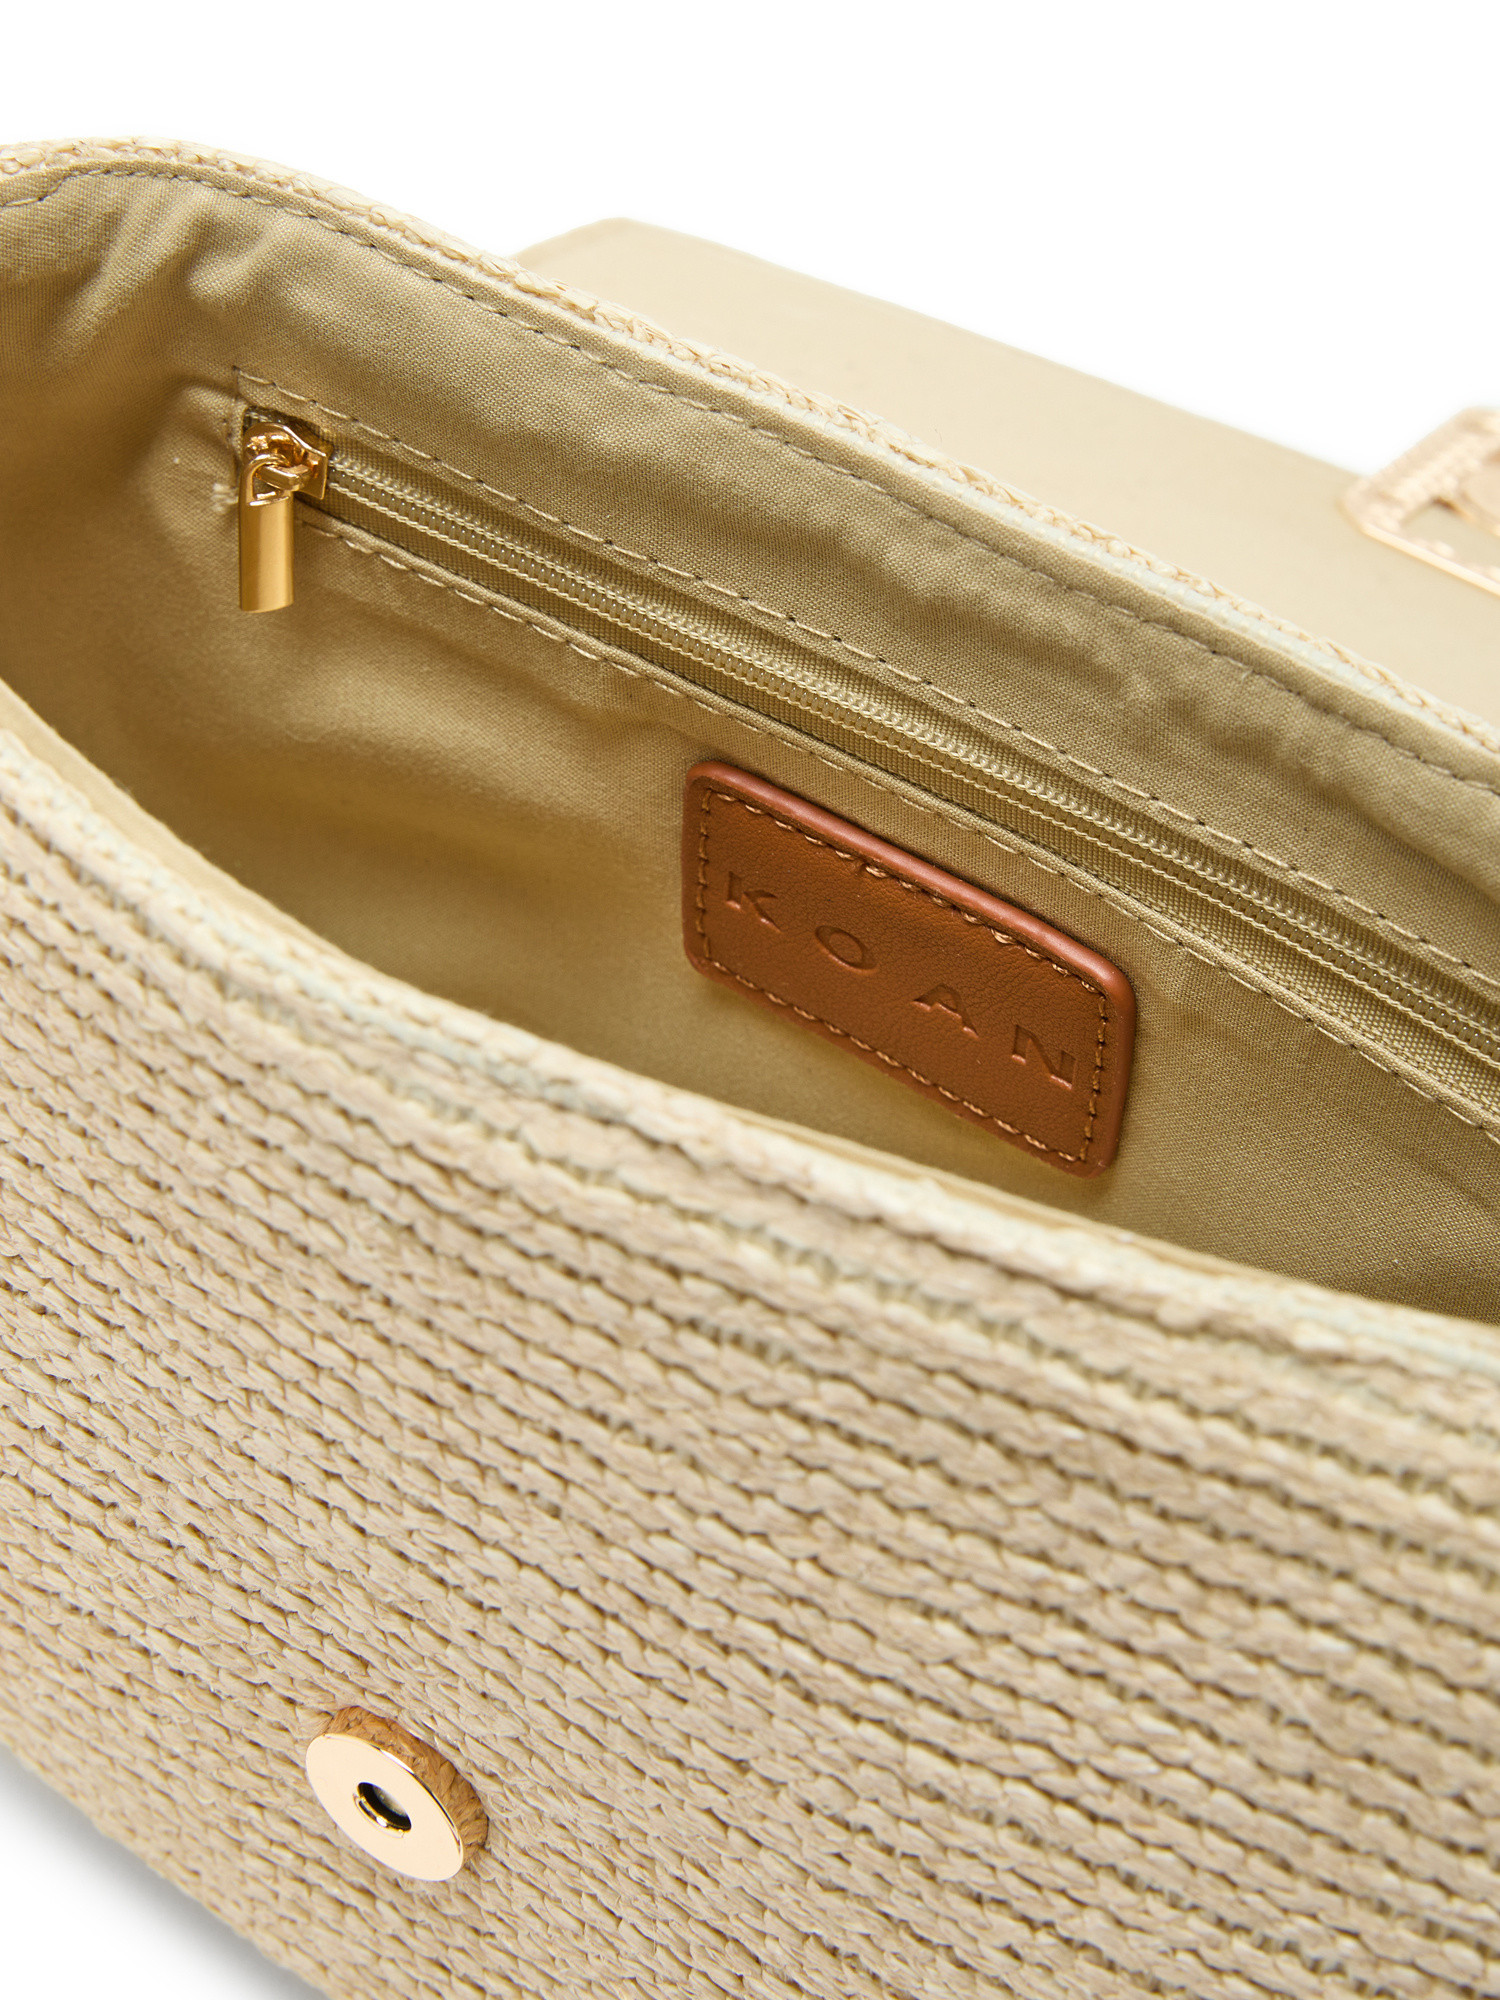 Koan - Straw shoulder bag, Light Brown, large image number 2